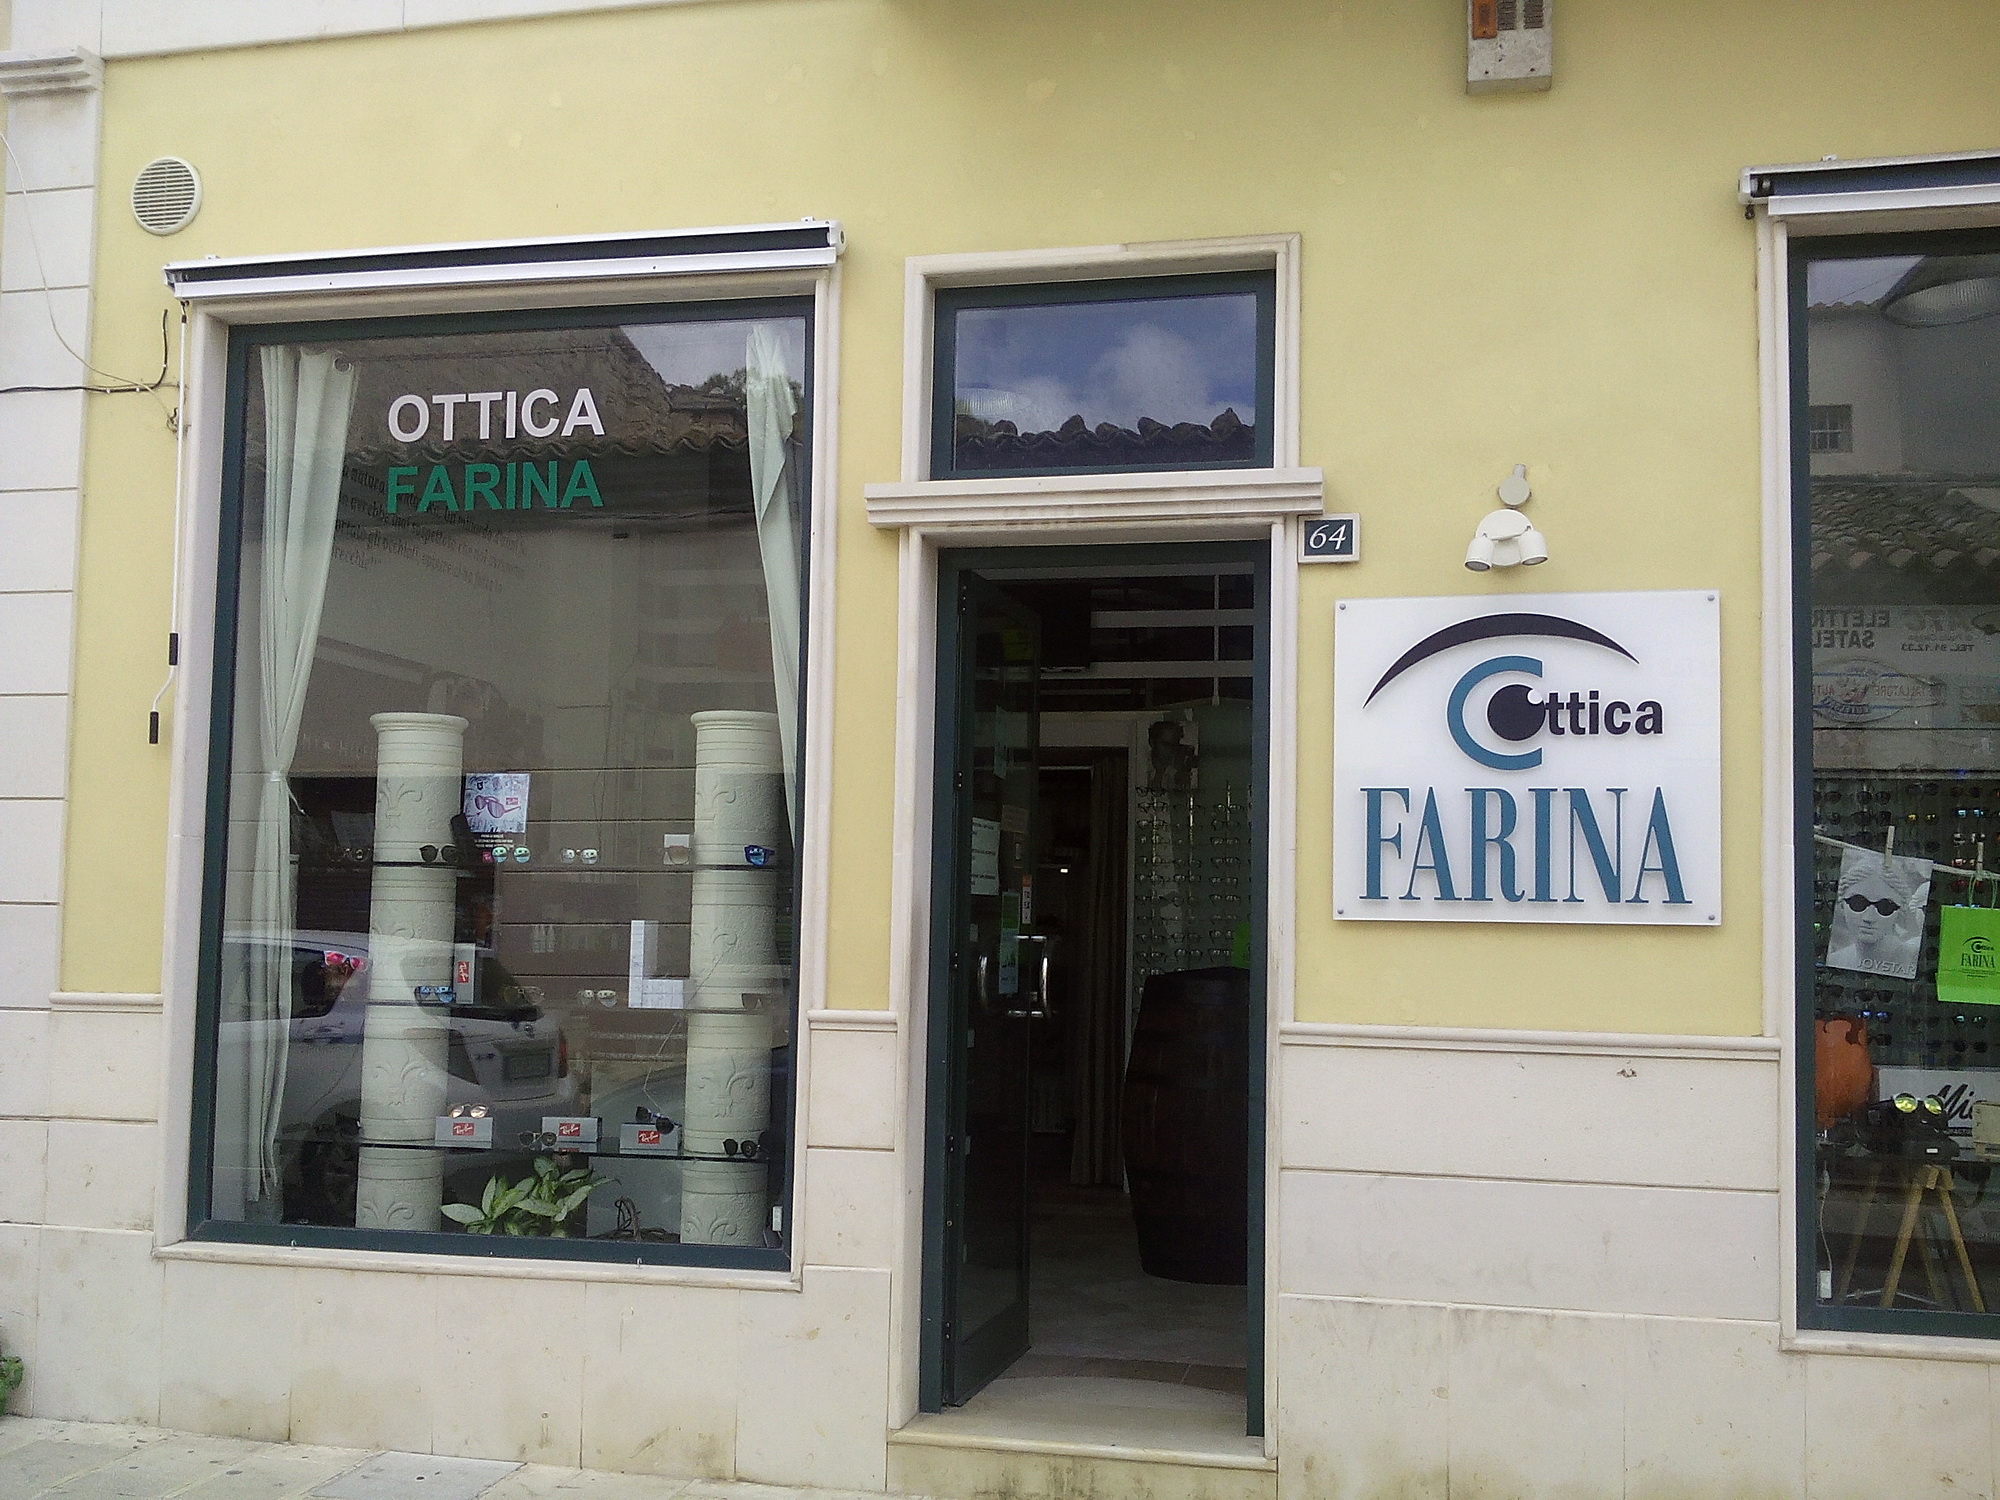  Ottica Farina, gli occhiali di qualità. E la visita optometrica è gratis